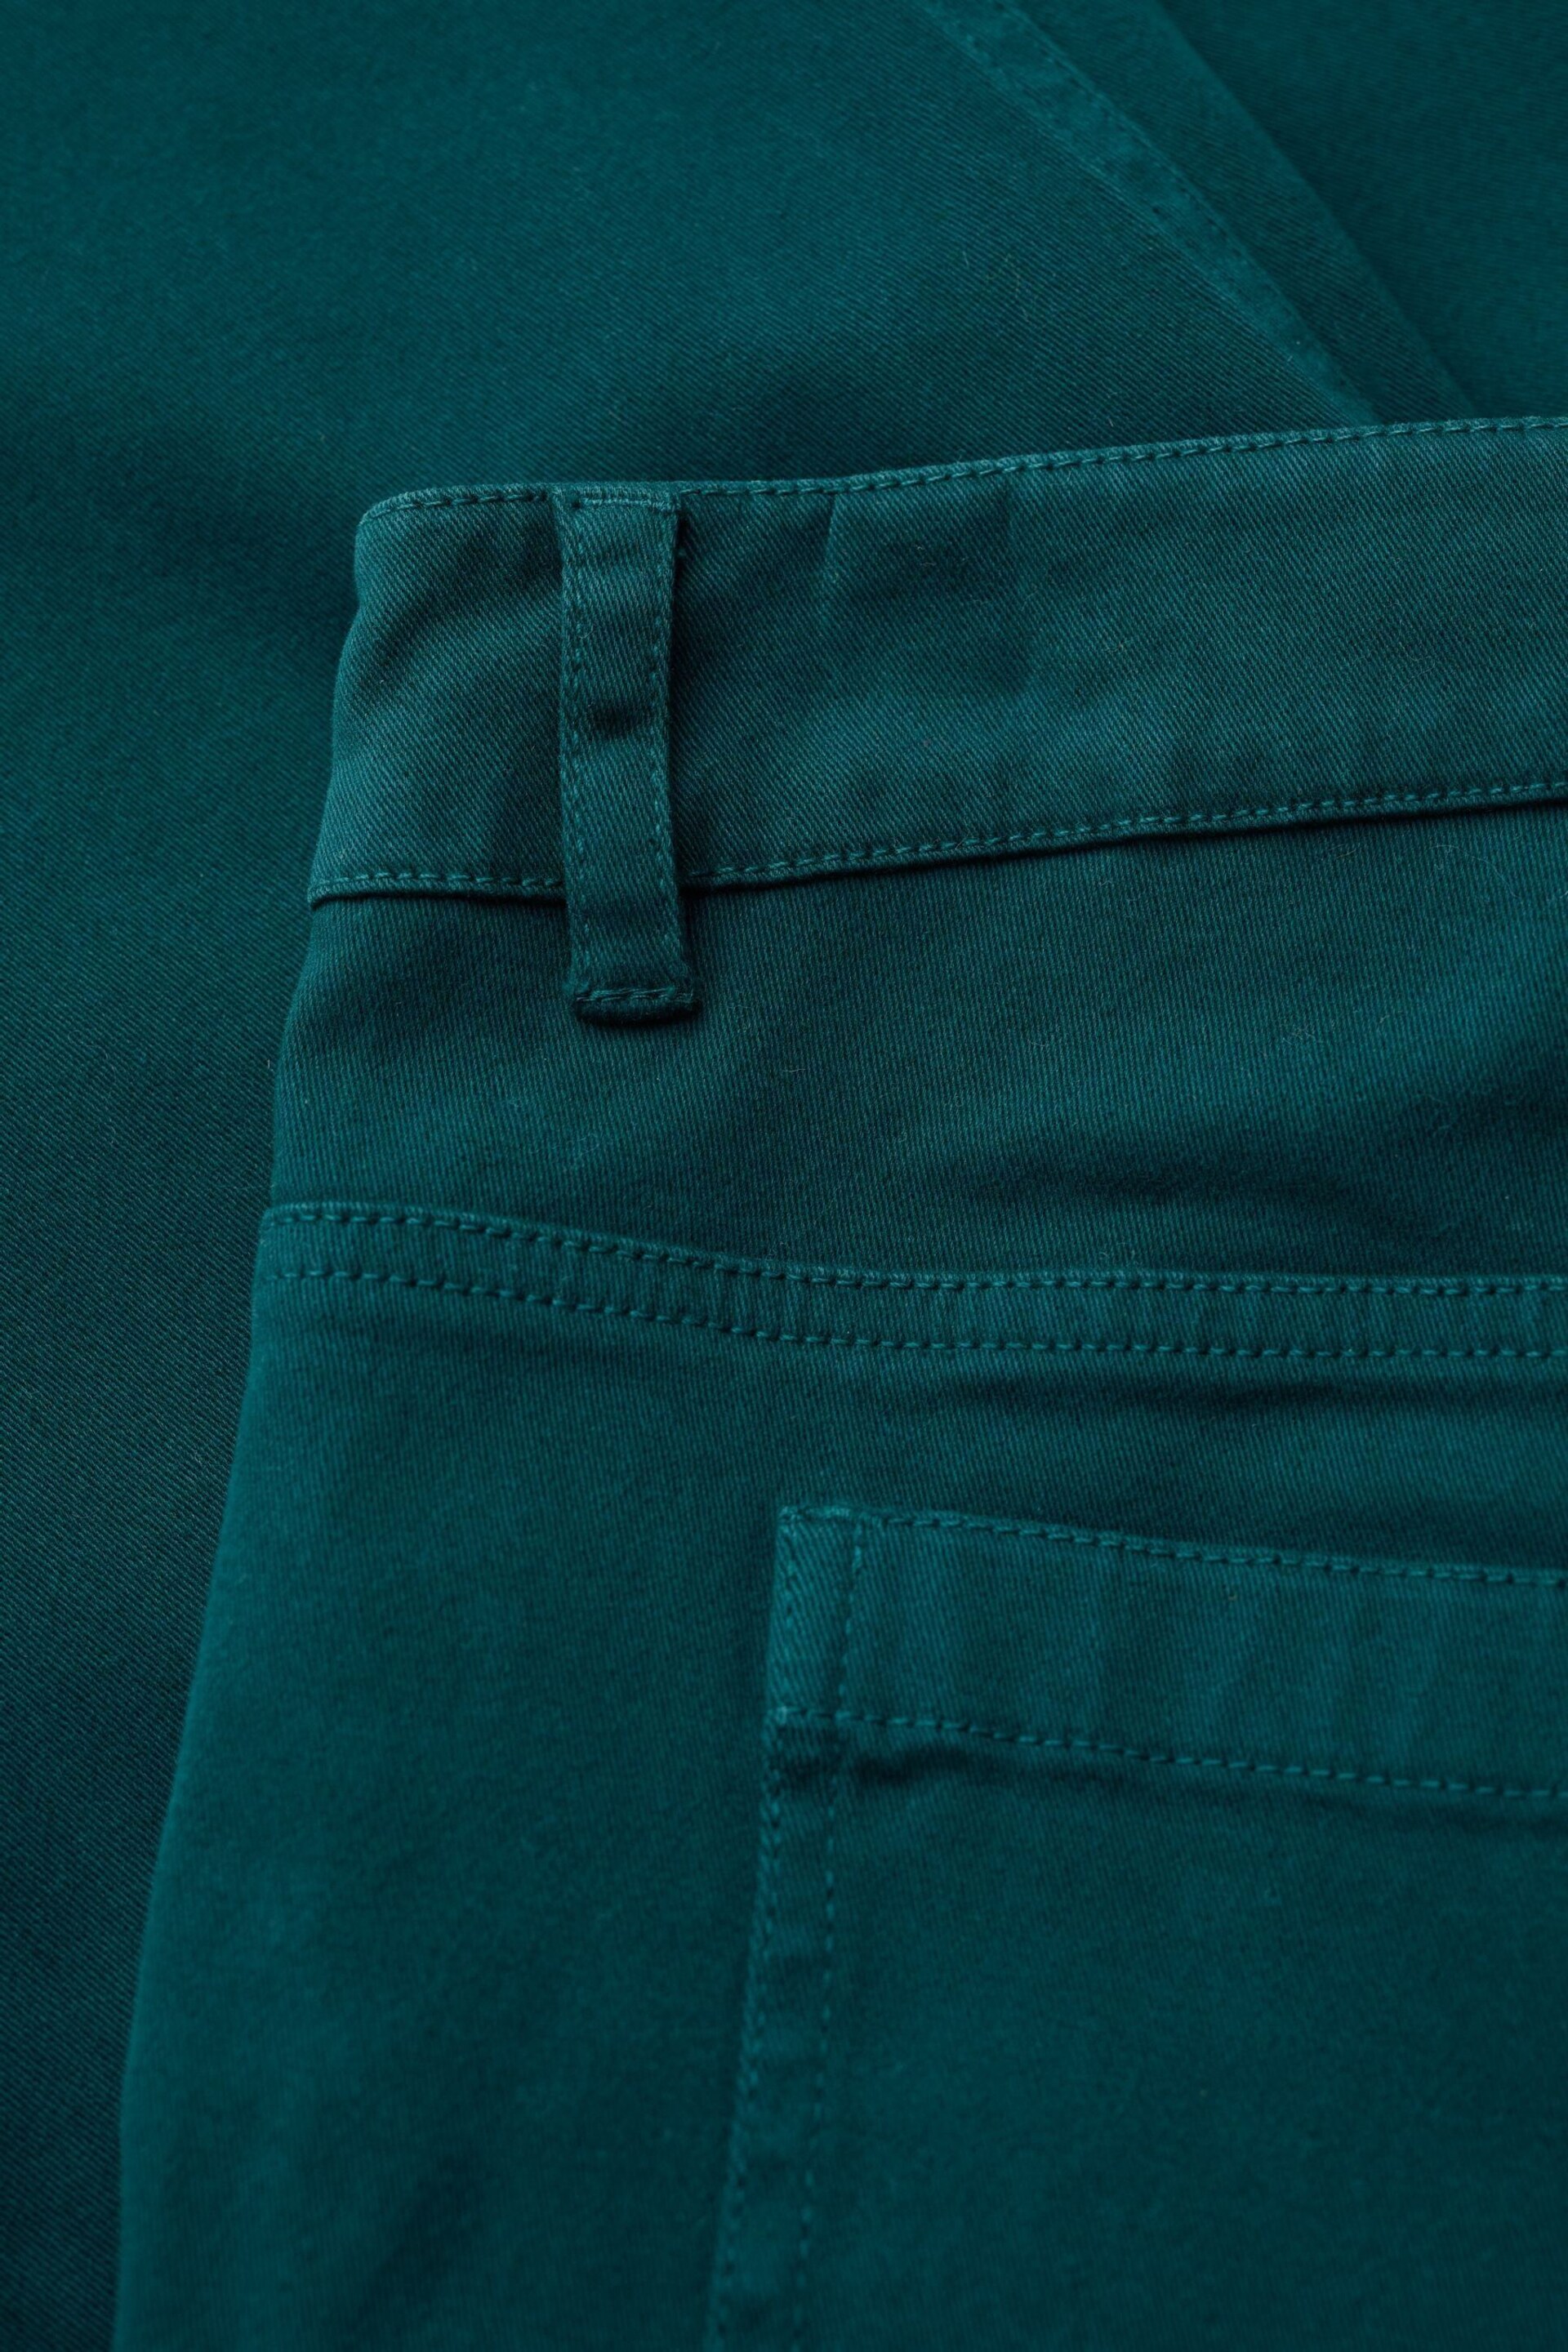 Seasalt Cornwall Teal Blue Slim-Fit Albert Quay Crop Trousers - Image 5 of 5